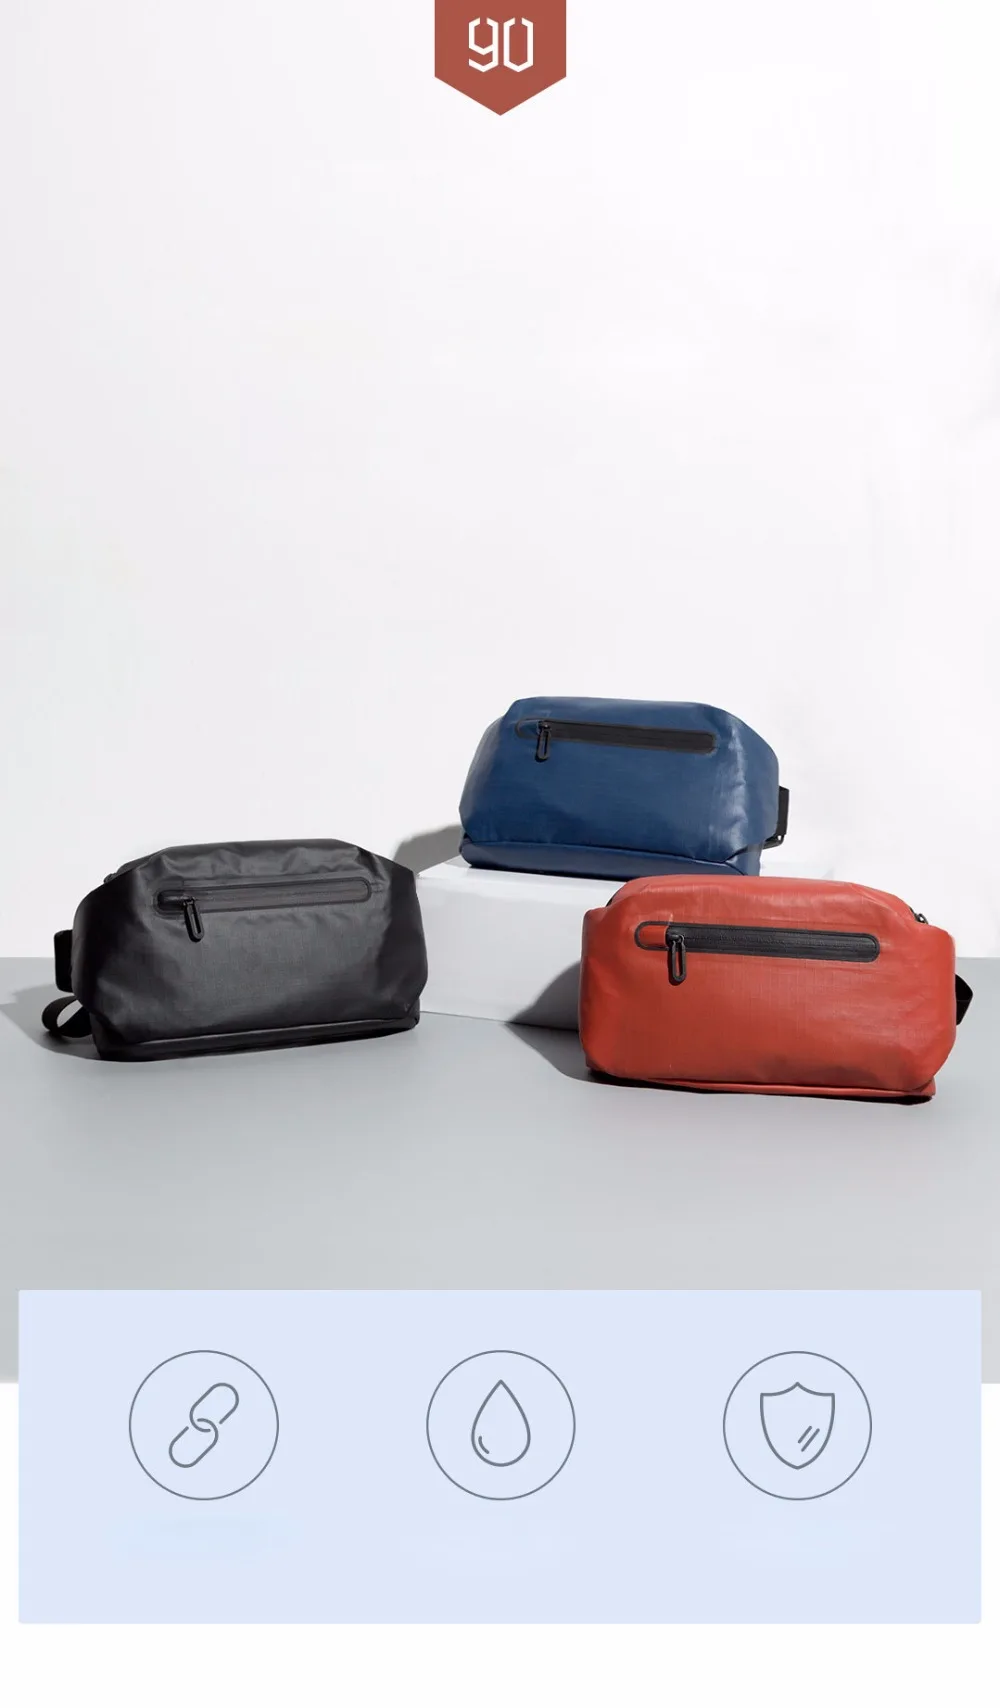 Xiaomi 90 Водонепроницаемый Сумка Прохладный Повседневное нагрудная сумка поясная сумка для денег сумка для спорта на открытом воздухе для верховой езды с предохранителем и универсальным питанием-от источника переменного или Предупреждение